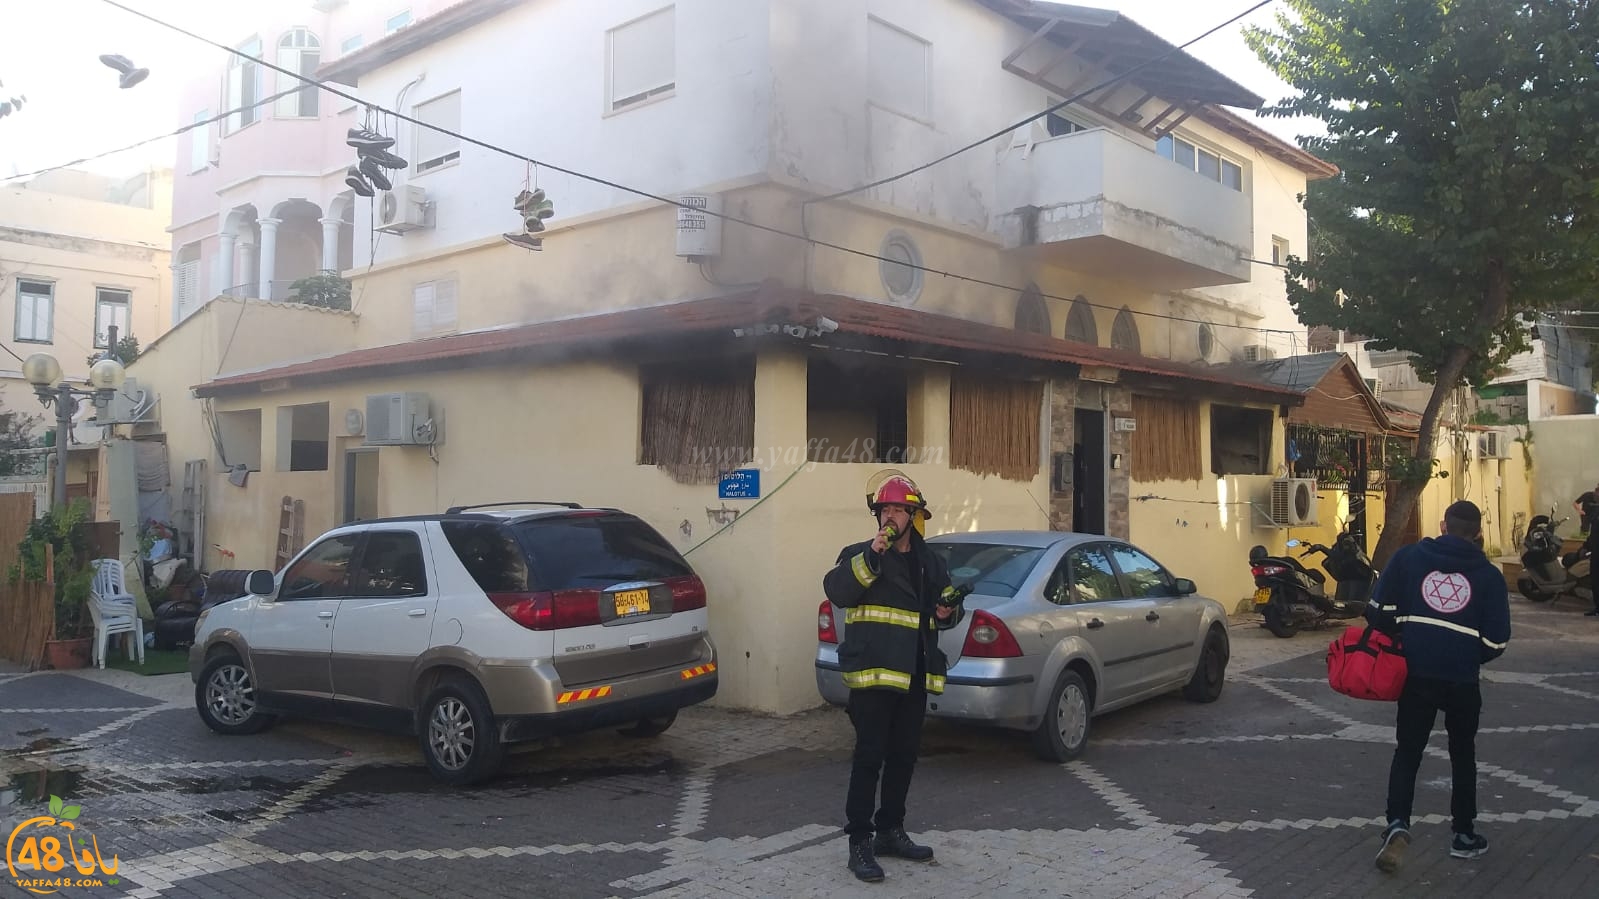 بالفيديو: حريق بأحد البيوت في حي العجمي بيافا وطواقم الانقاذ تهرع للمكان